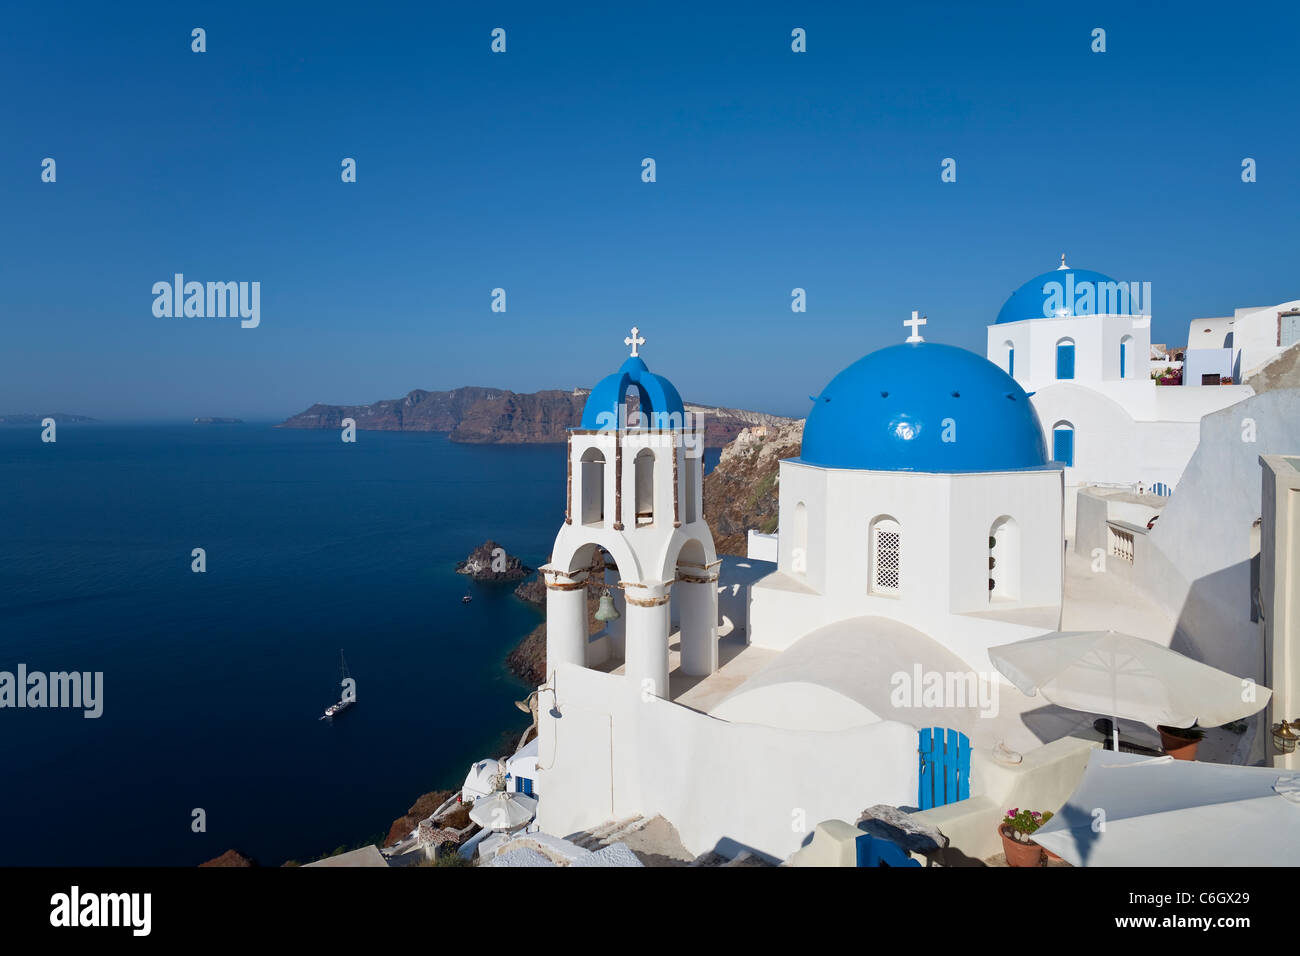 Blauen Kuppelkirchen im Dorf Oia (La), Santorini (Thira), Kykladen, Ägäis, Griechenland, Europa Stockfoto